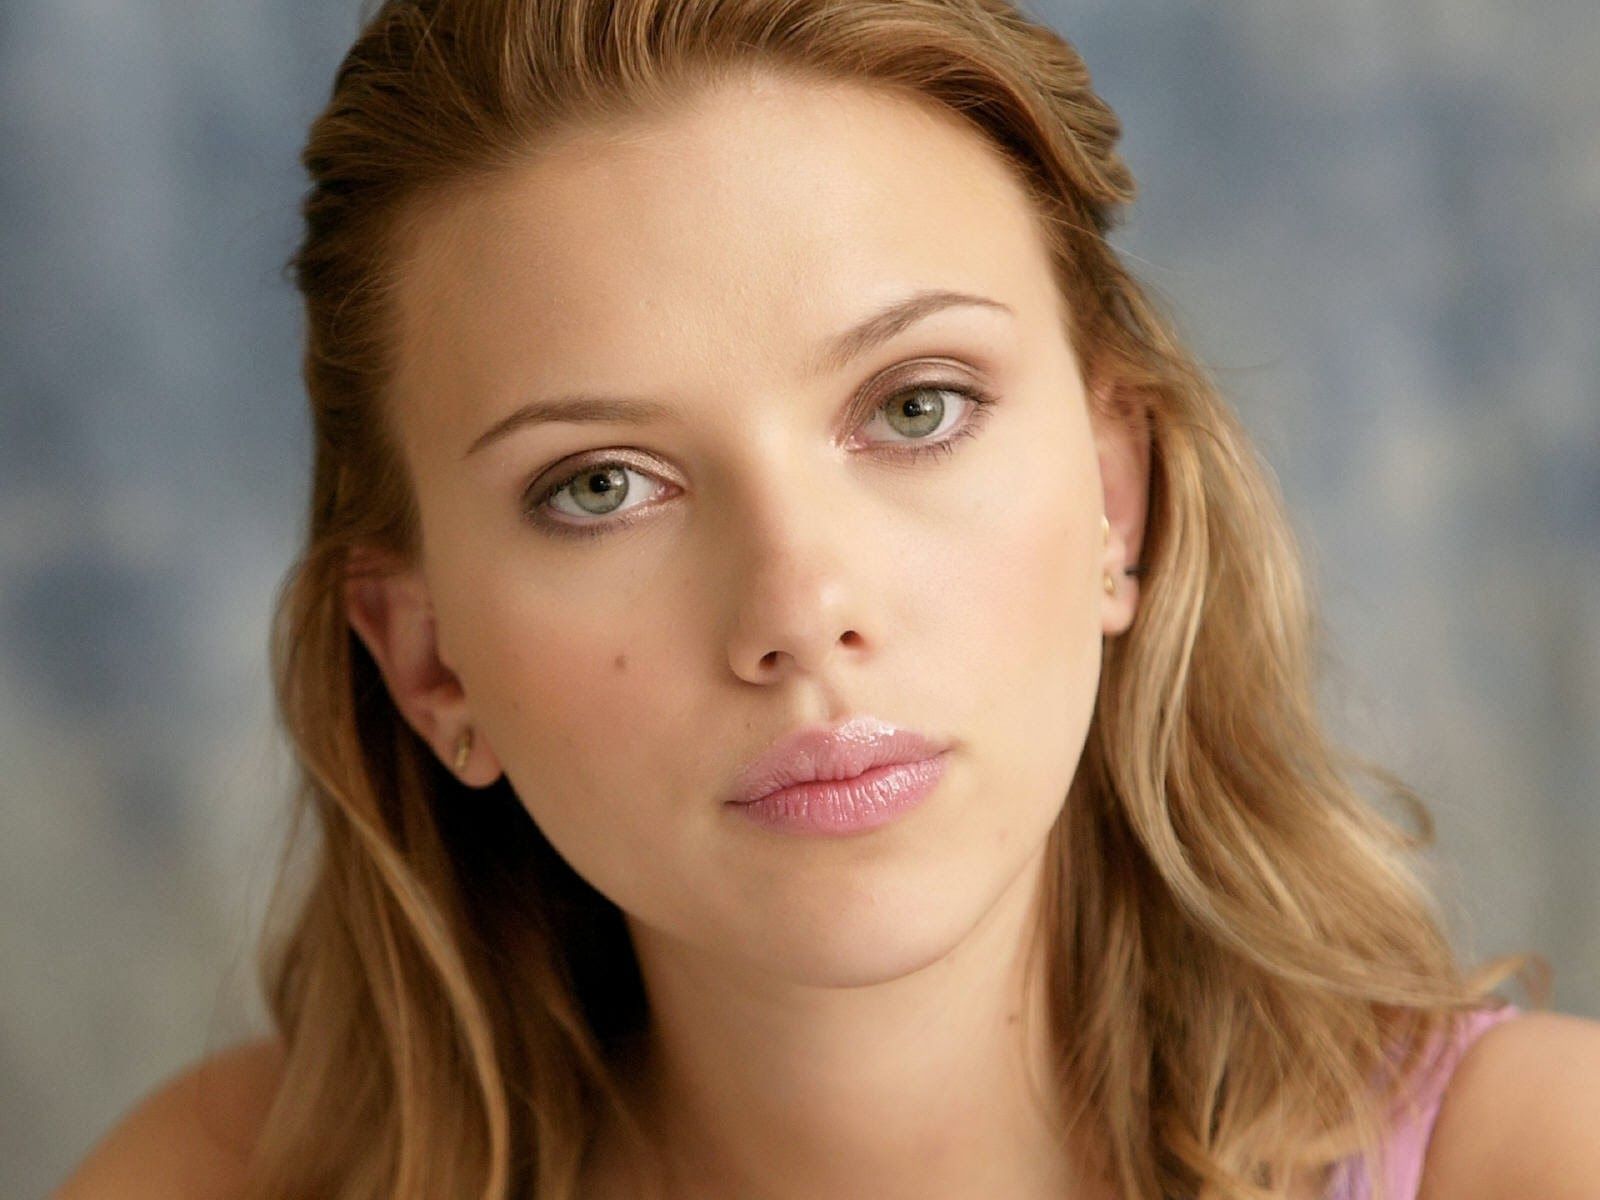 Scarlett Johansson HD Wallpaper Free Download. Scarlett